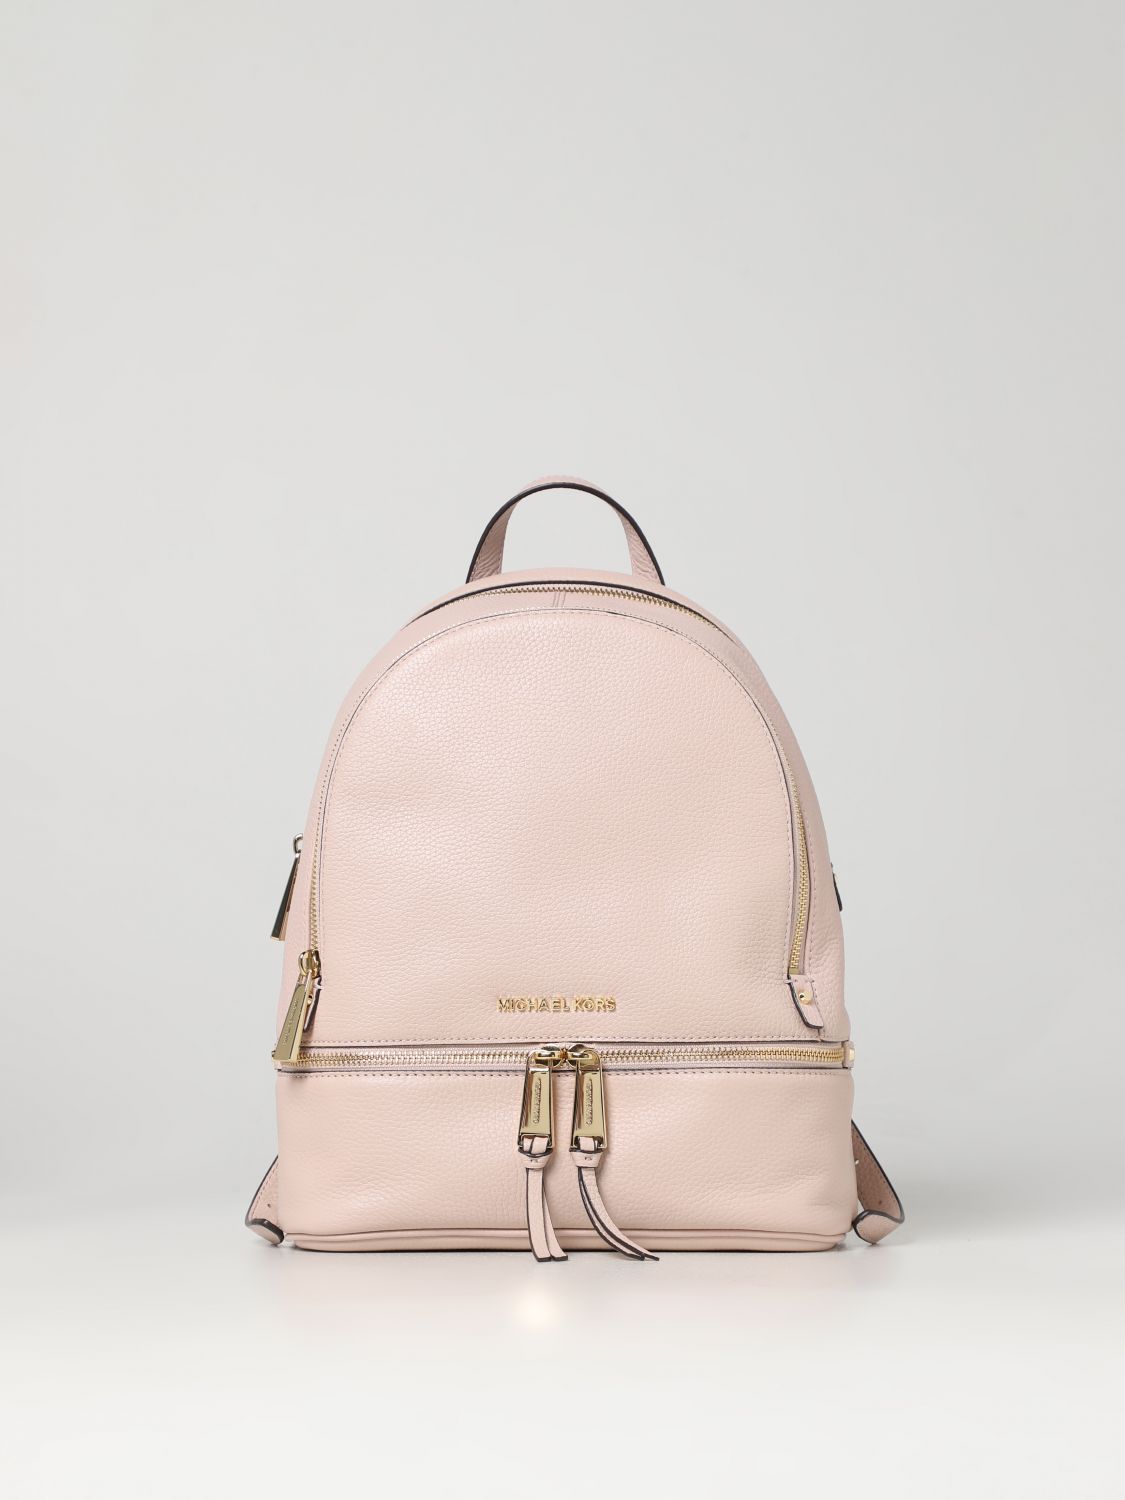 Michael Kors Pink Backpacks  Mercari